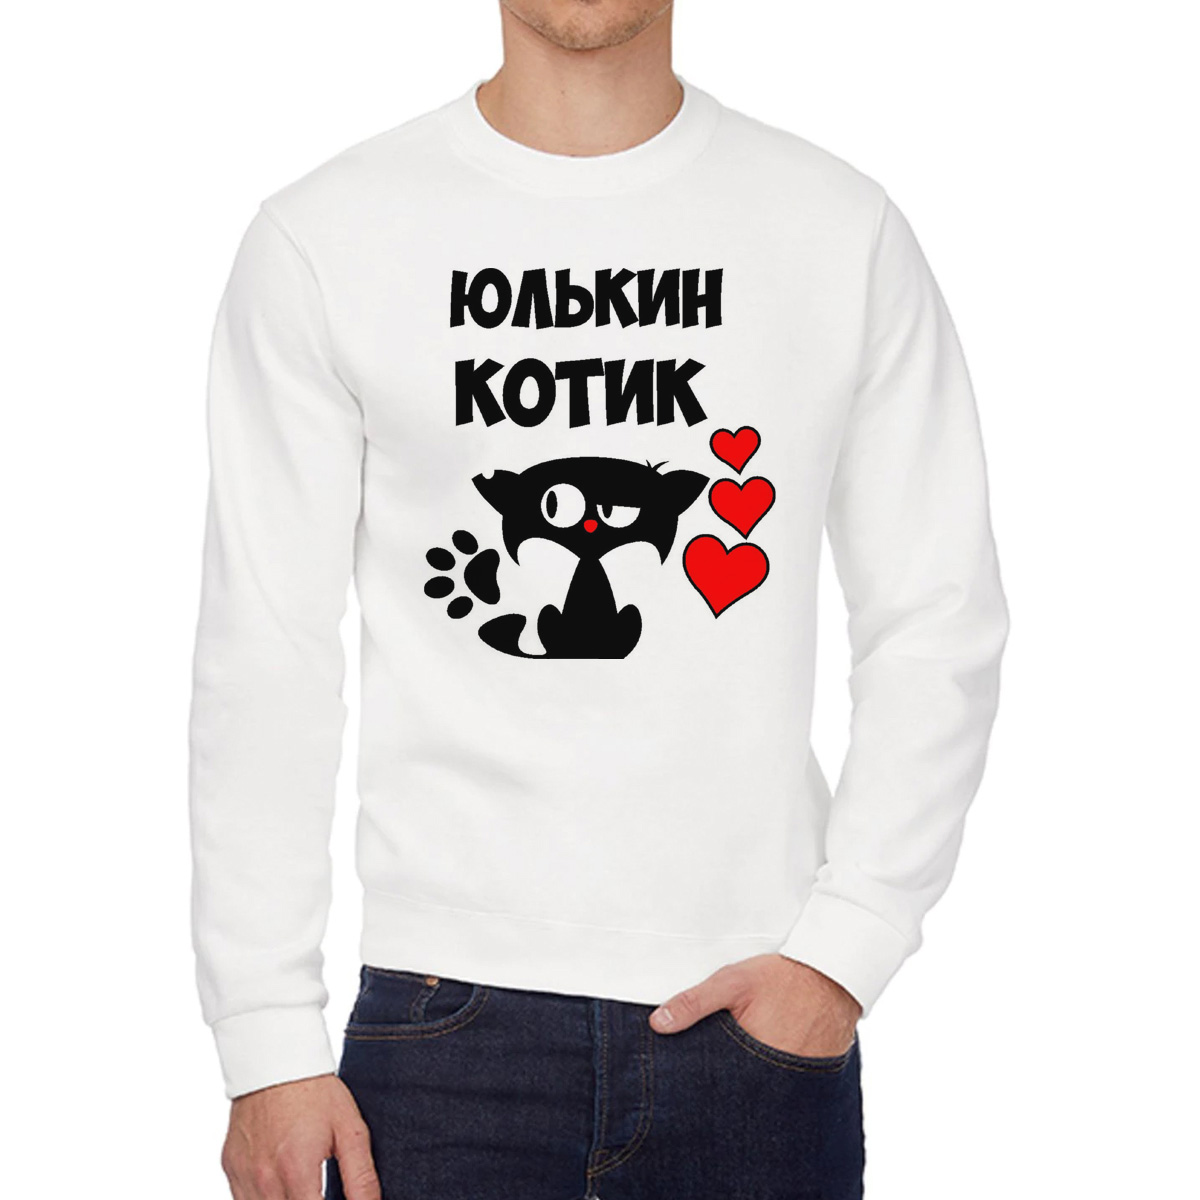 Свитшот мужской CoolPodarok Юлькин котик белый 58 RU